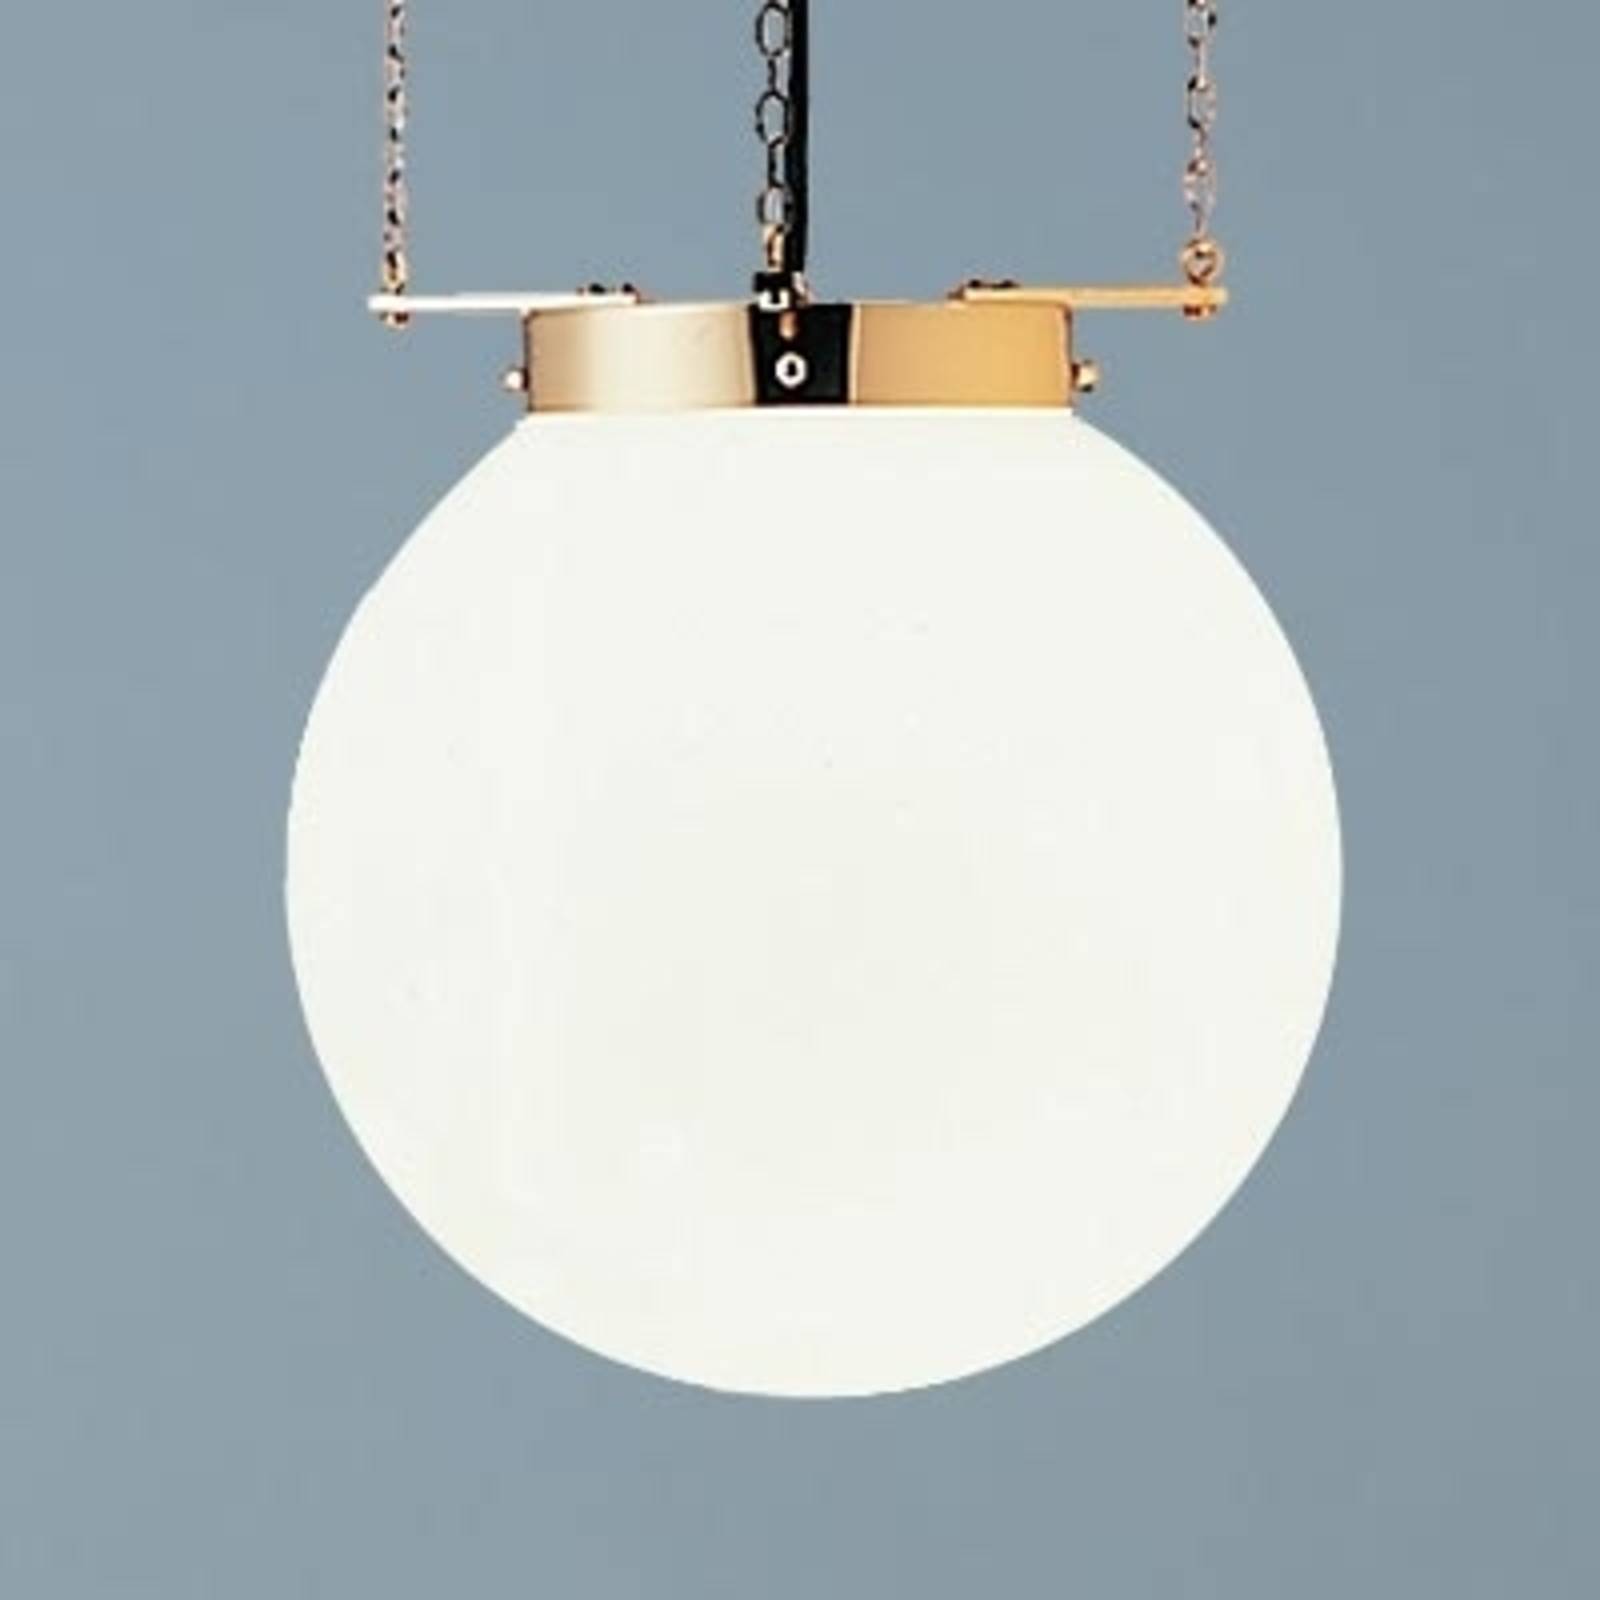 Hanglamp in Bauhaus-stijl, messing, 35 cm